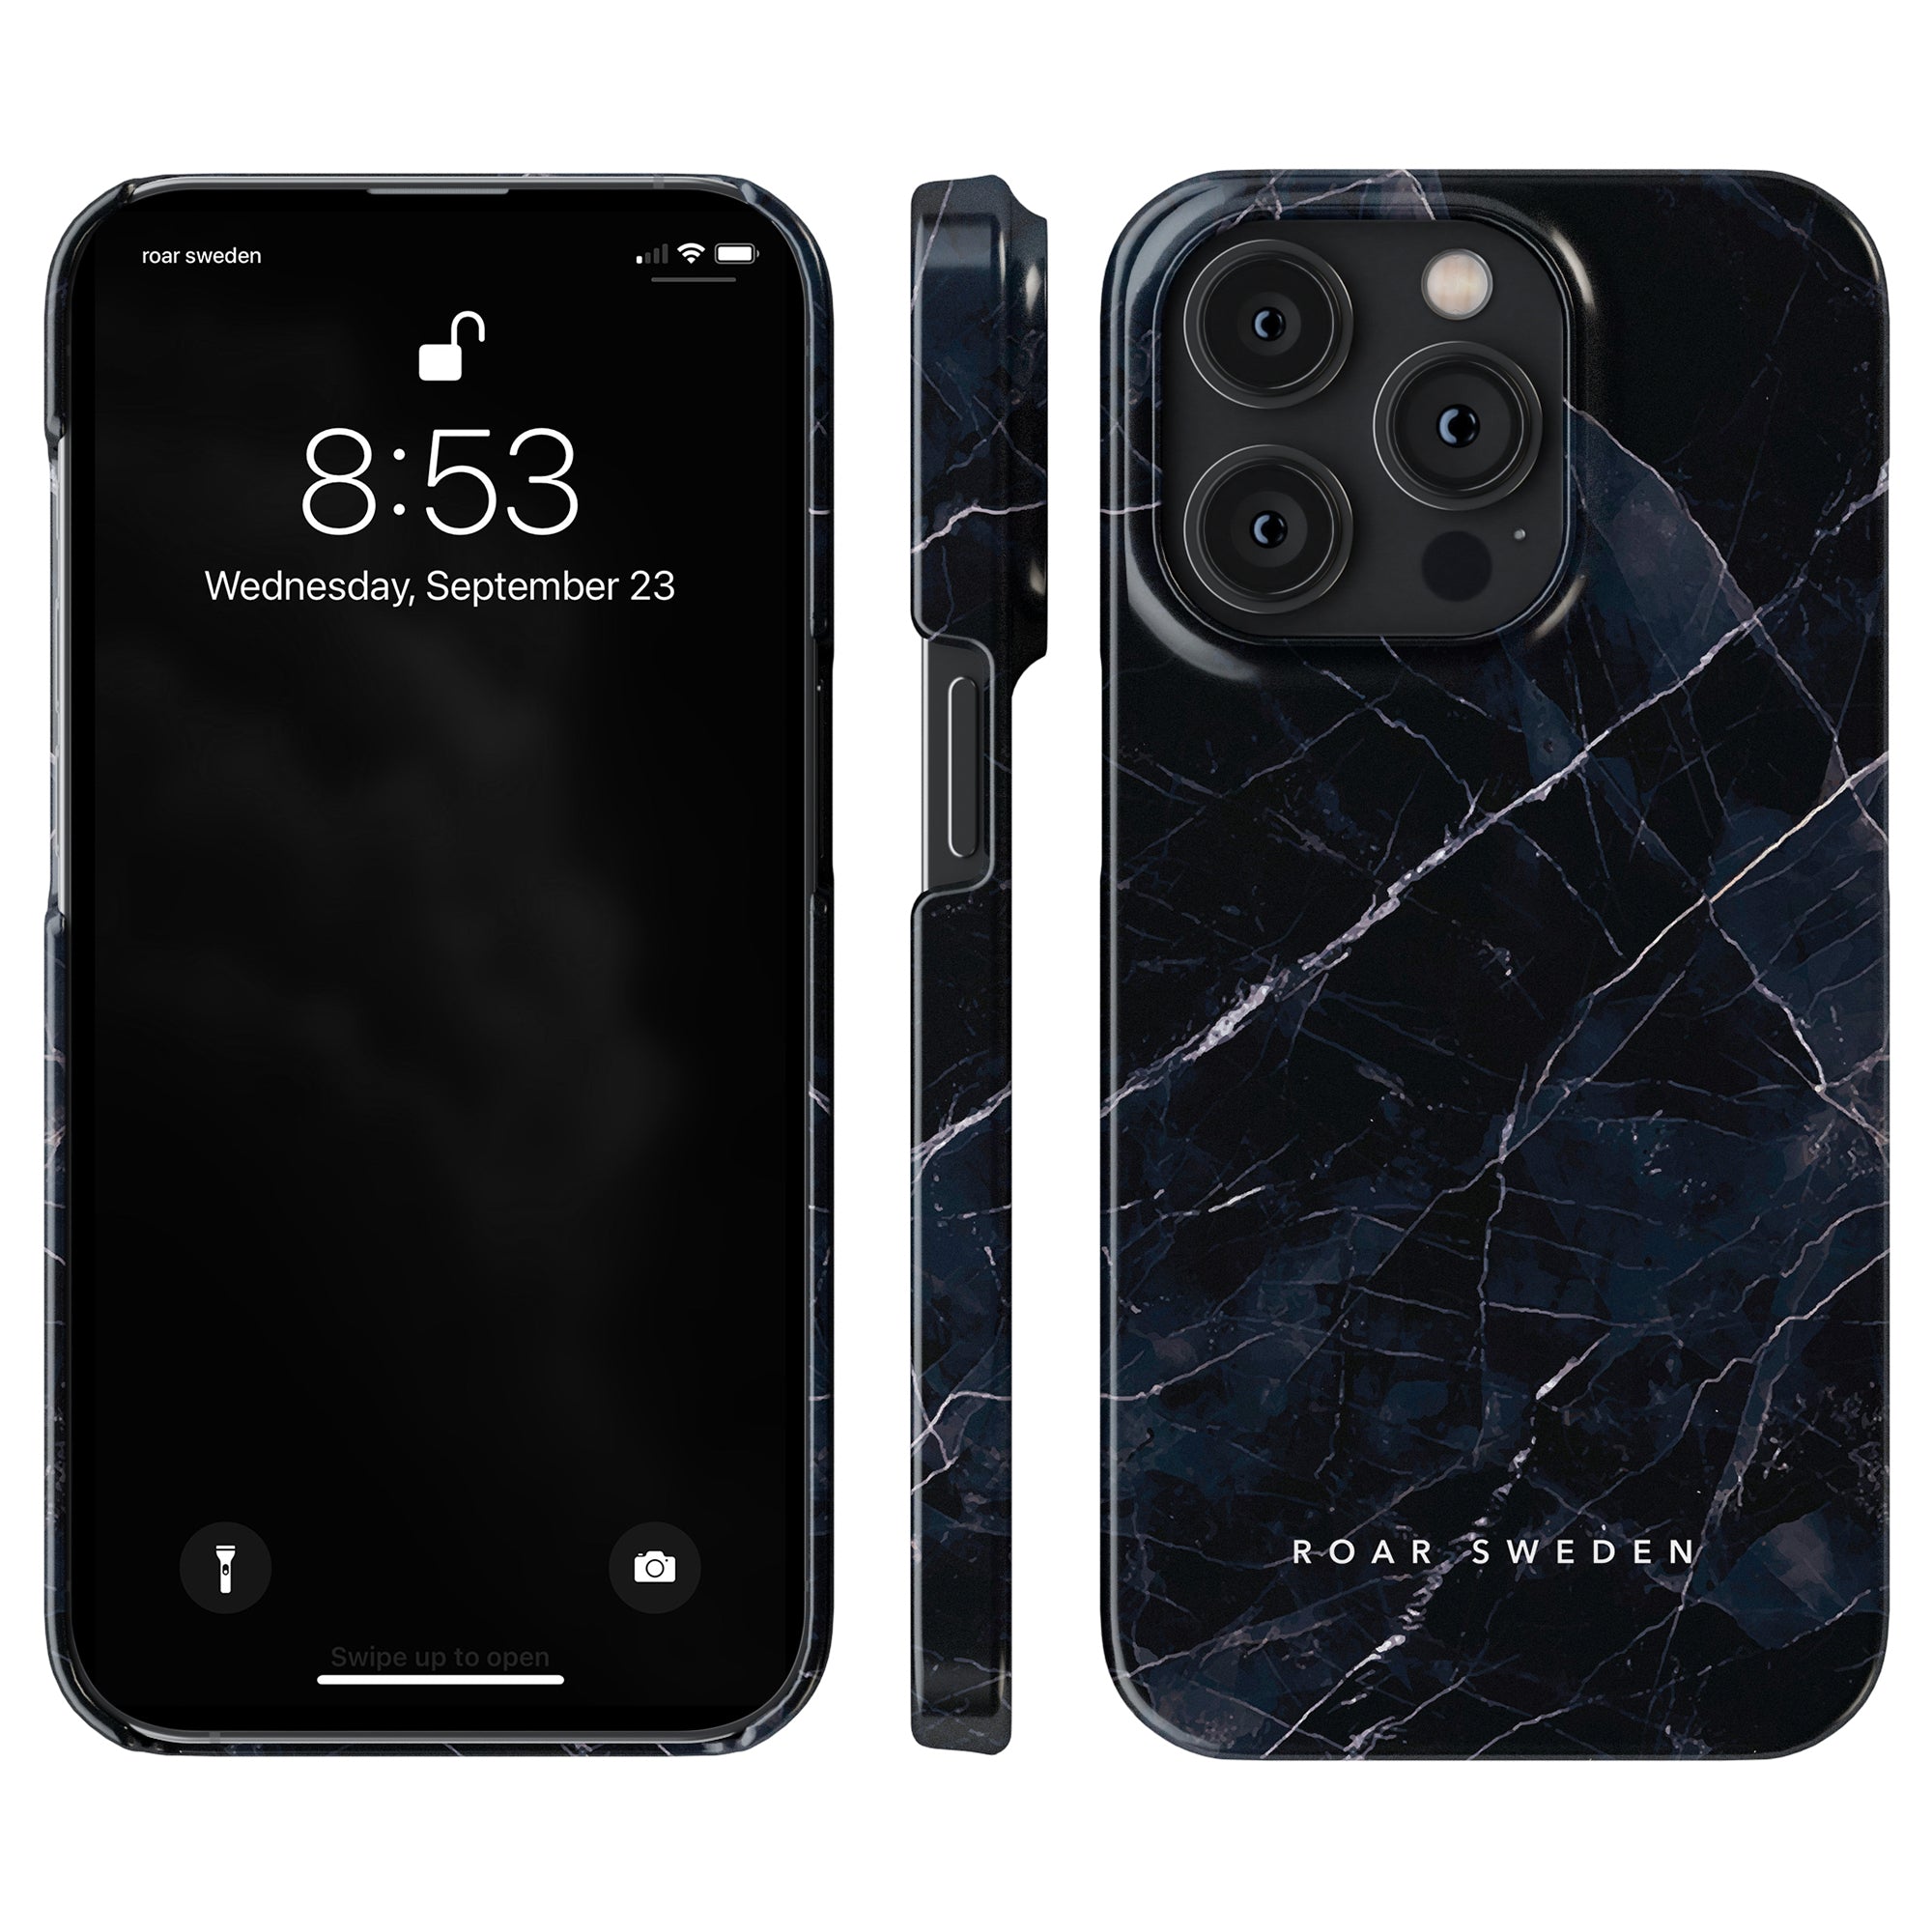 Mobilskal av Nero - Slim case med snug passform för din telefon samtidigt som du behåller tillgång till alla knappar och funktioner.